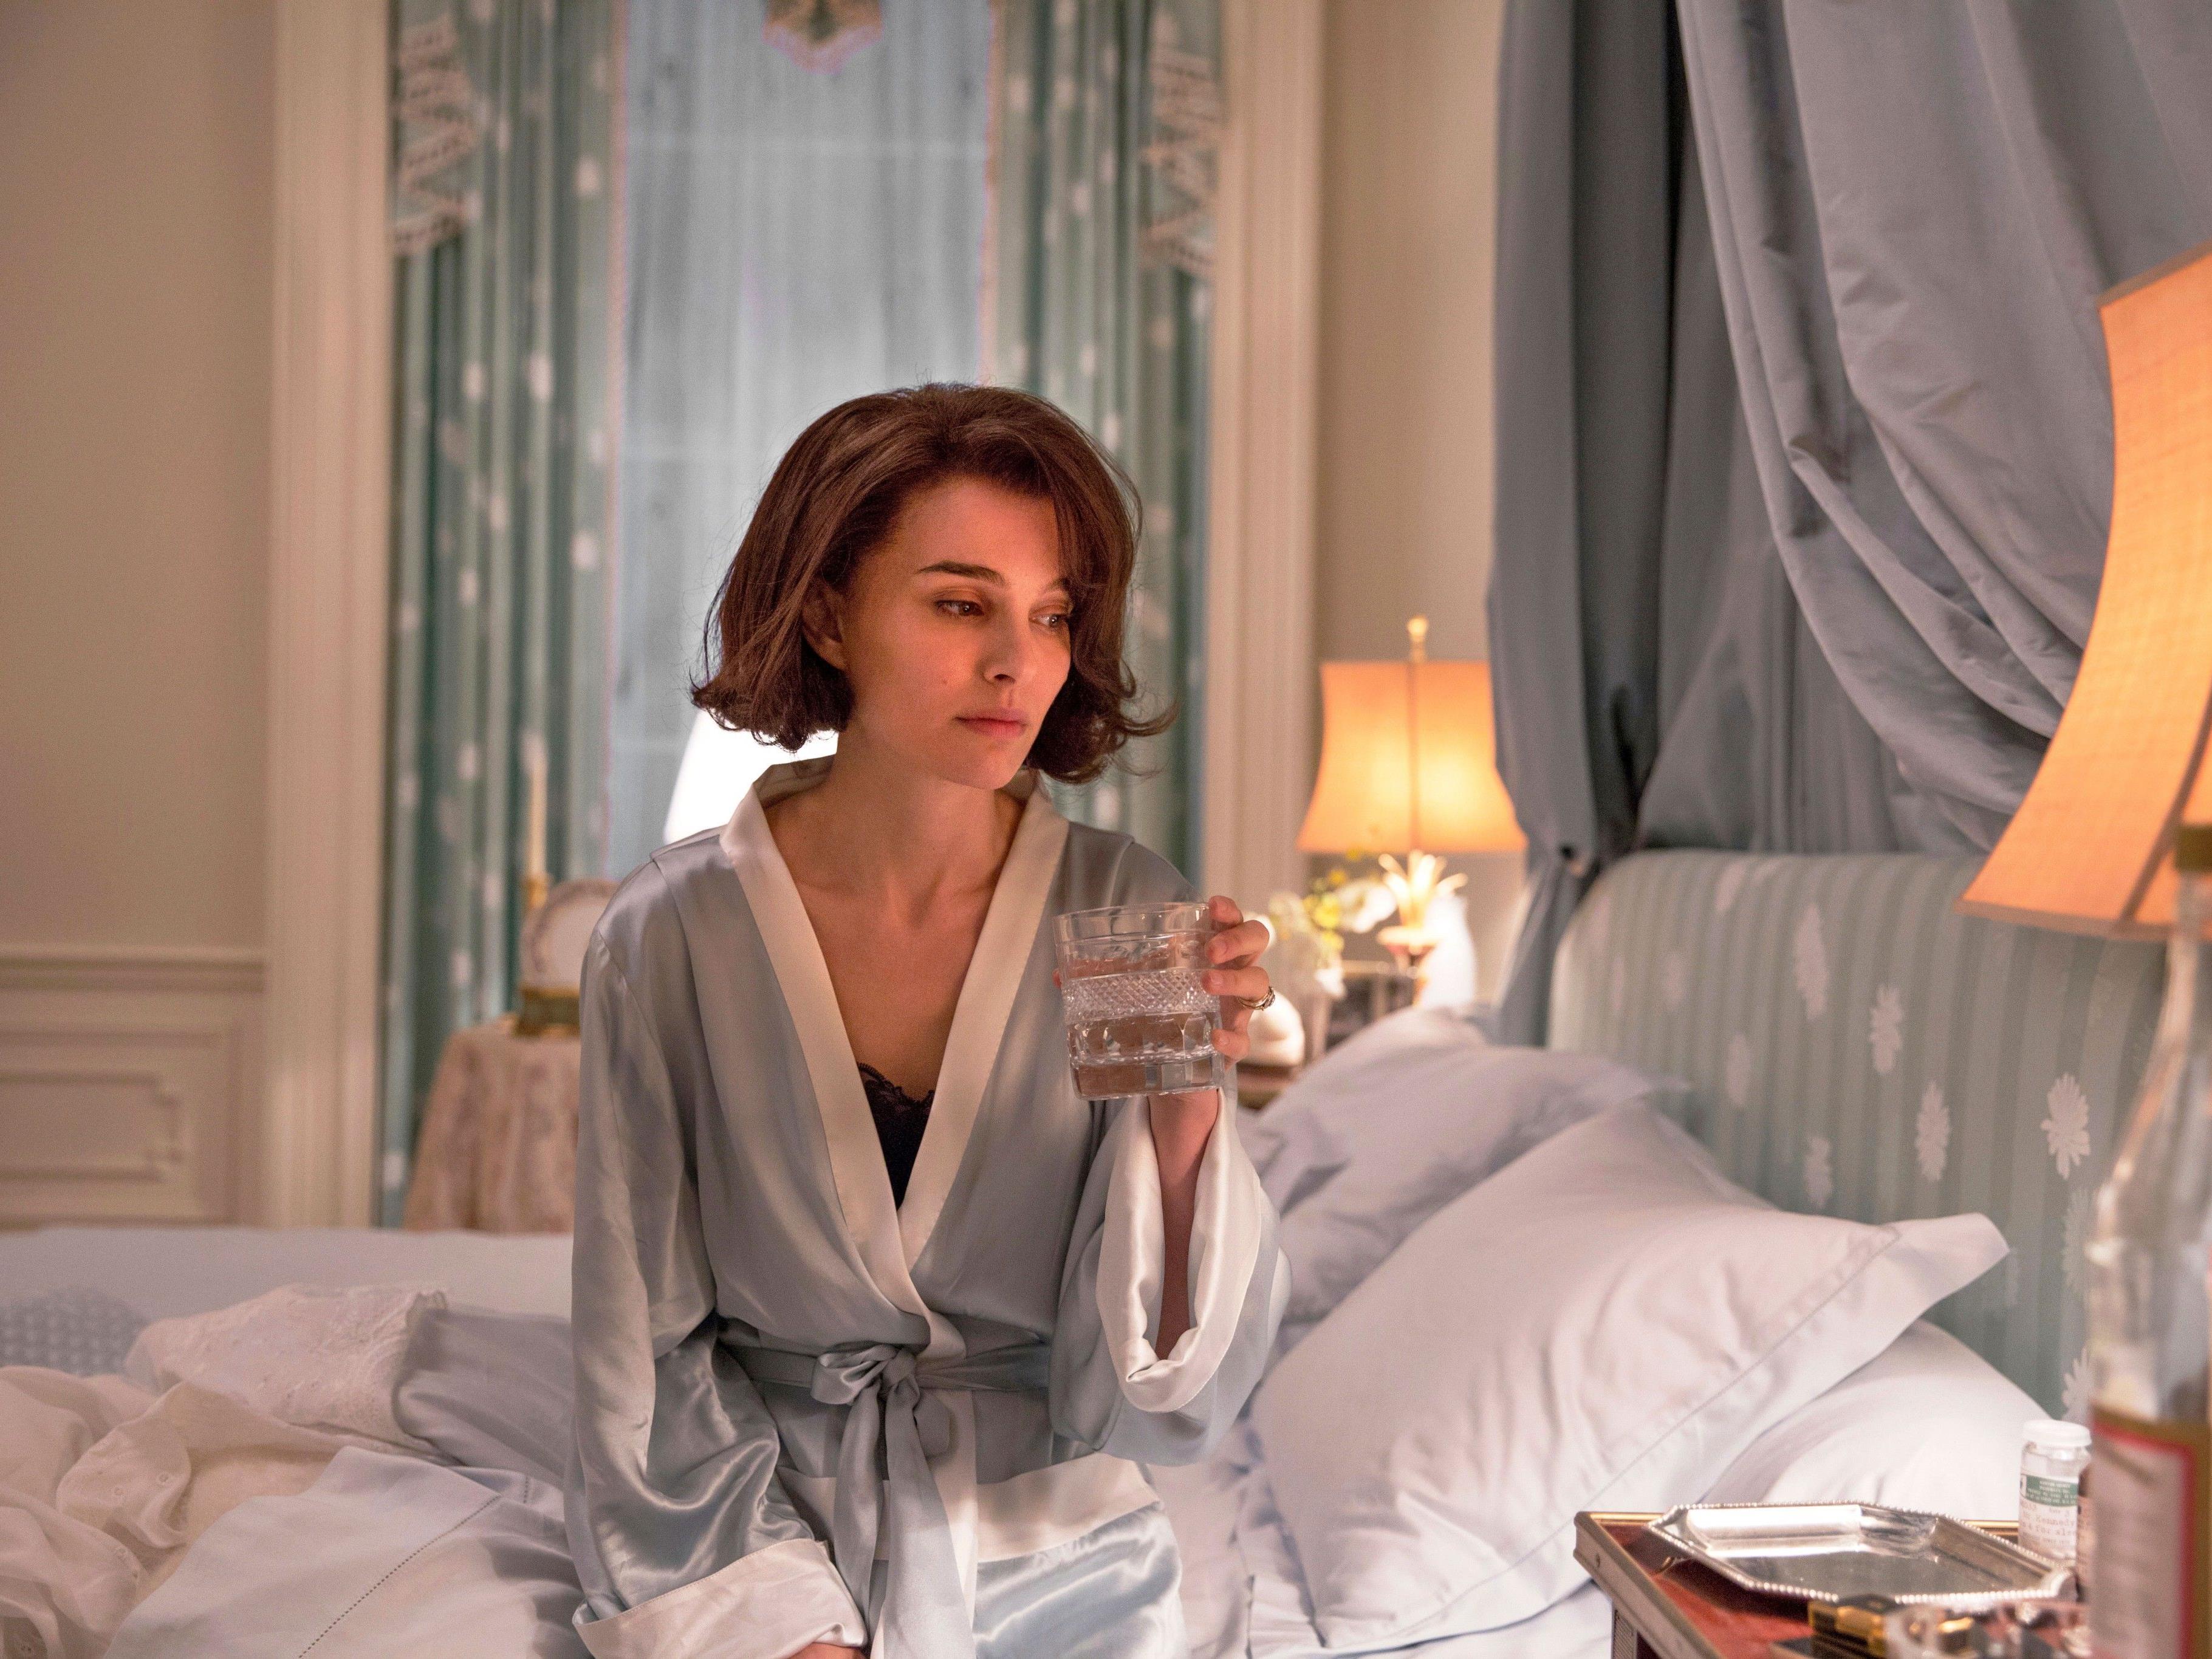 Natalie Portman ist nominiert für "Jackie" - sie spielte Jackie Kennedy